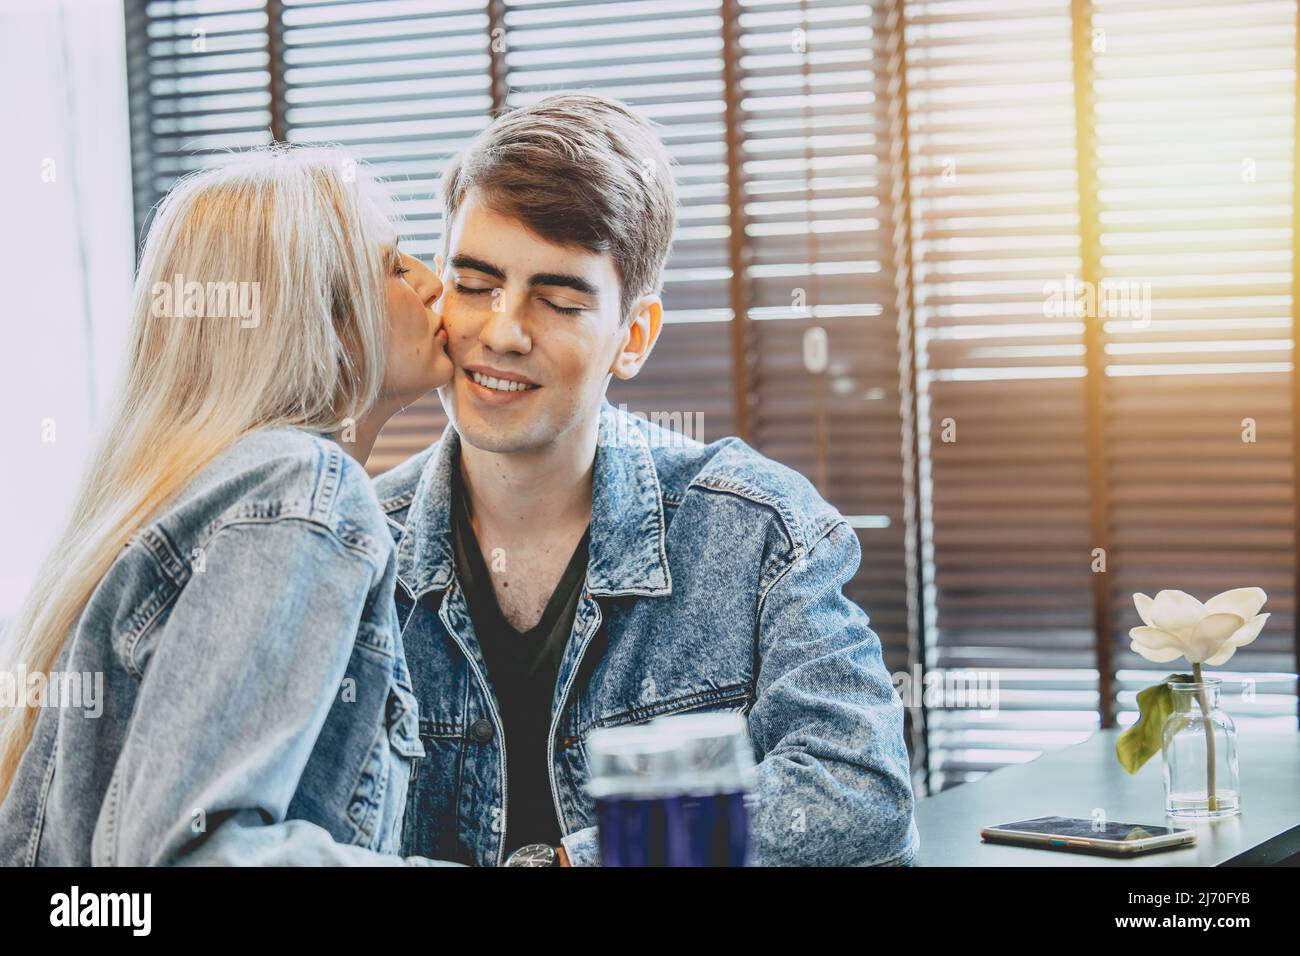 pareja joven amante besando juntos, beso mejilla amor expresión en el espacio público. Foto de stock